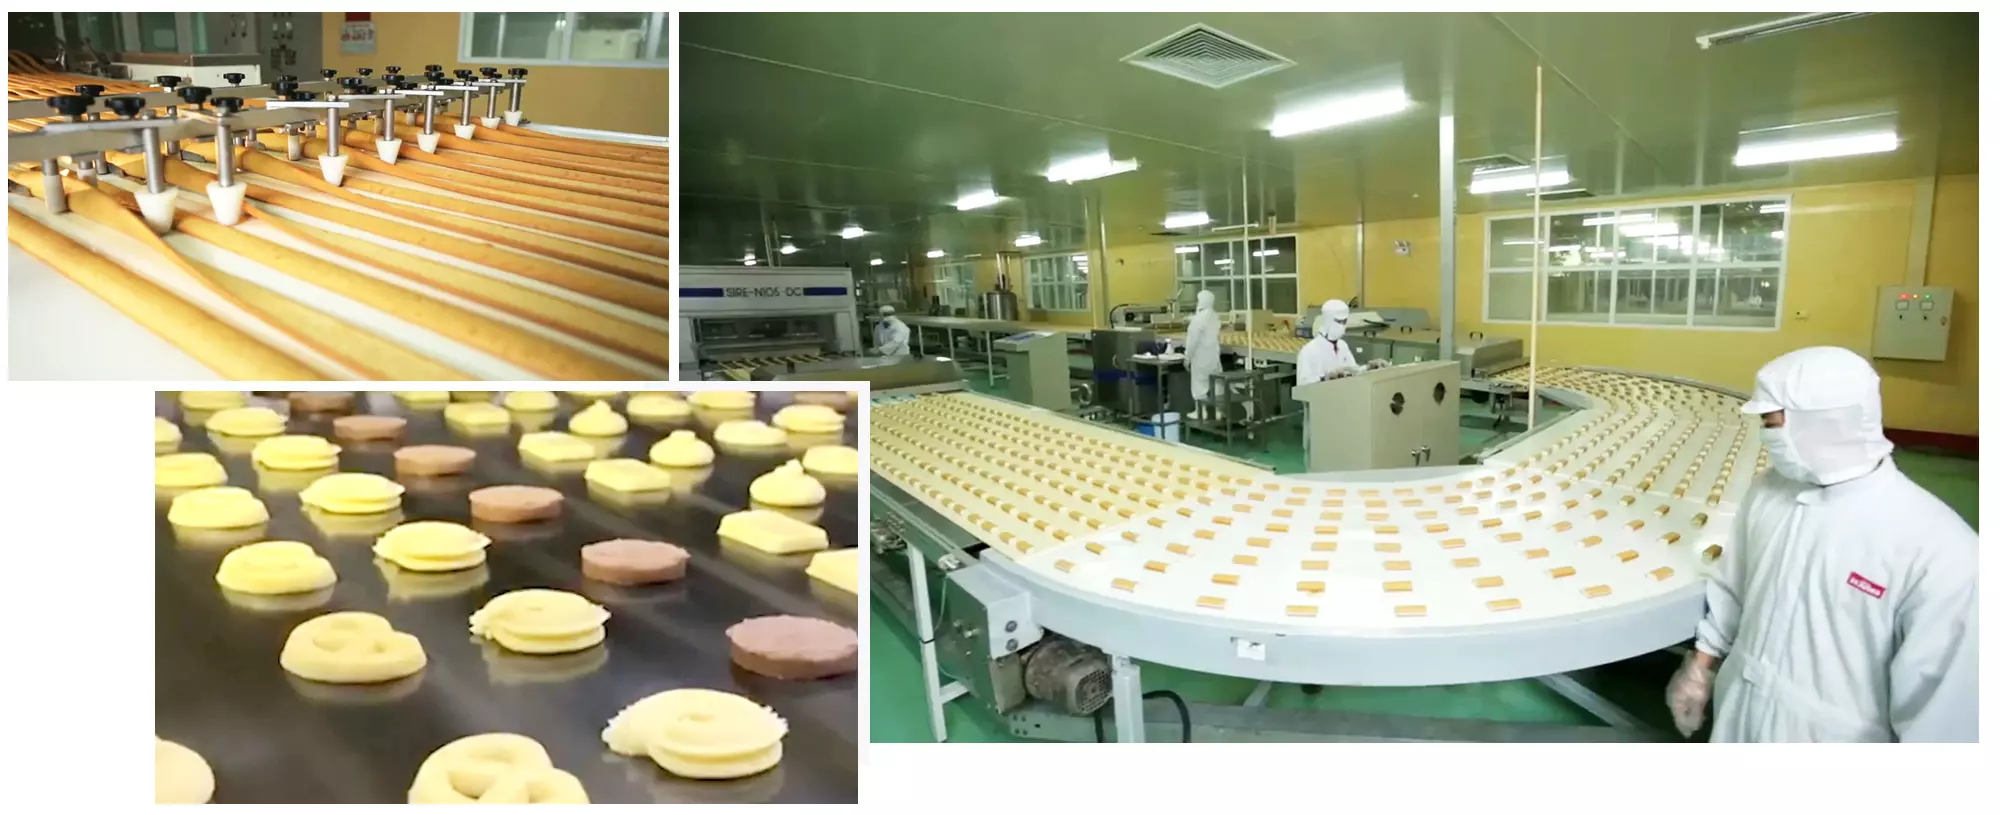 dây chuyền sản xuất bánh richy hiện đại